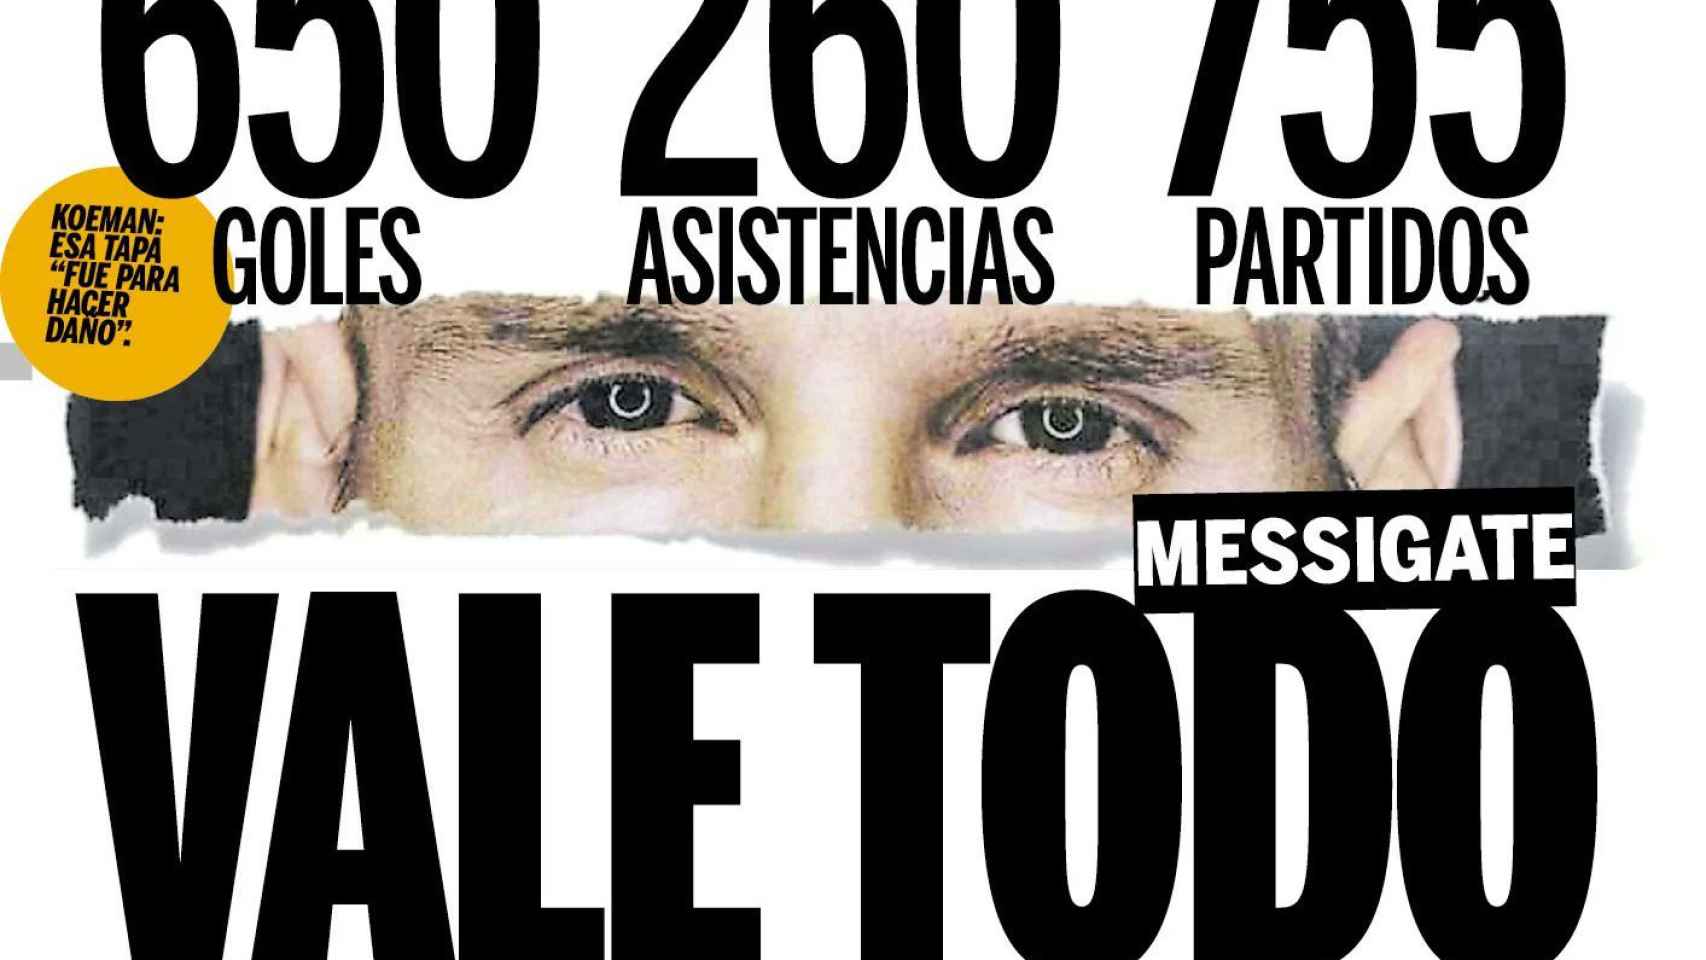 La portada de 'Olé' en defensa de Messi / EFE